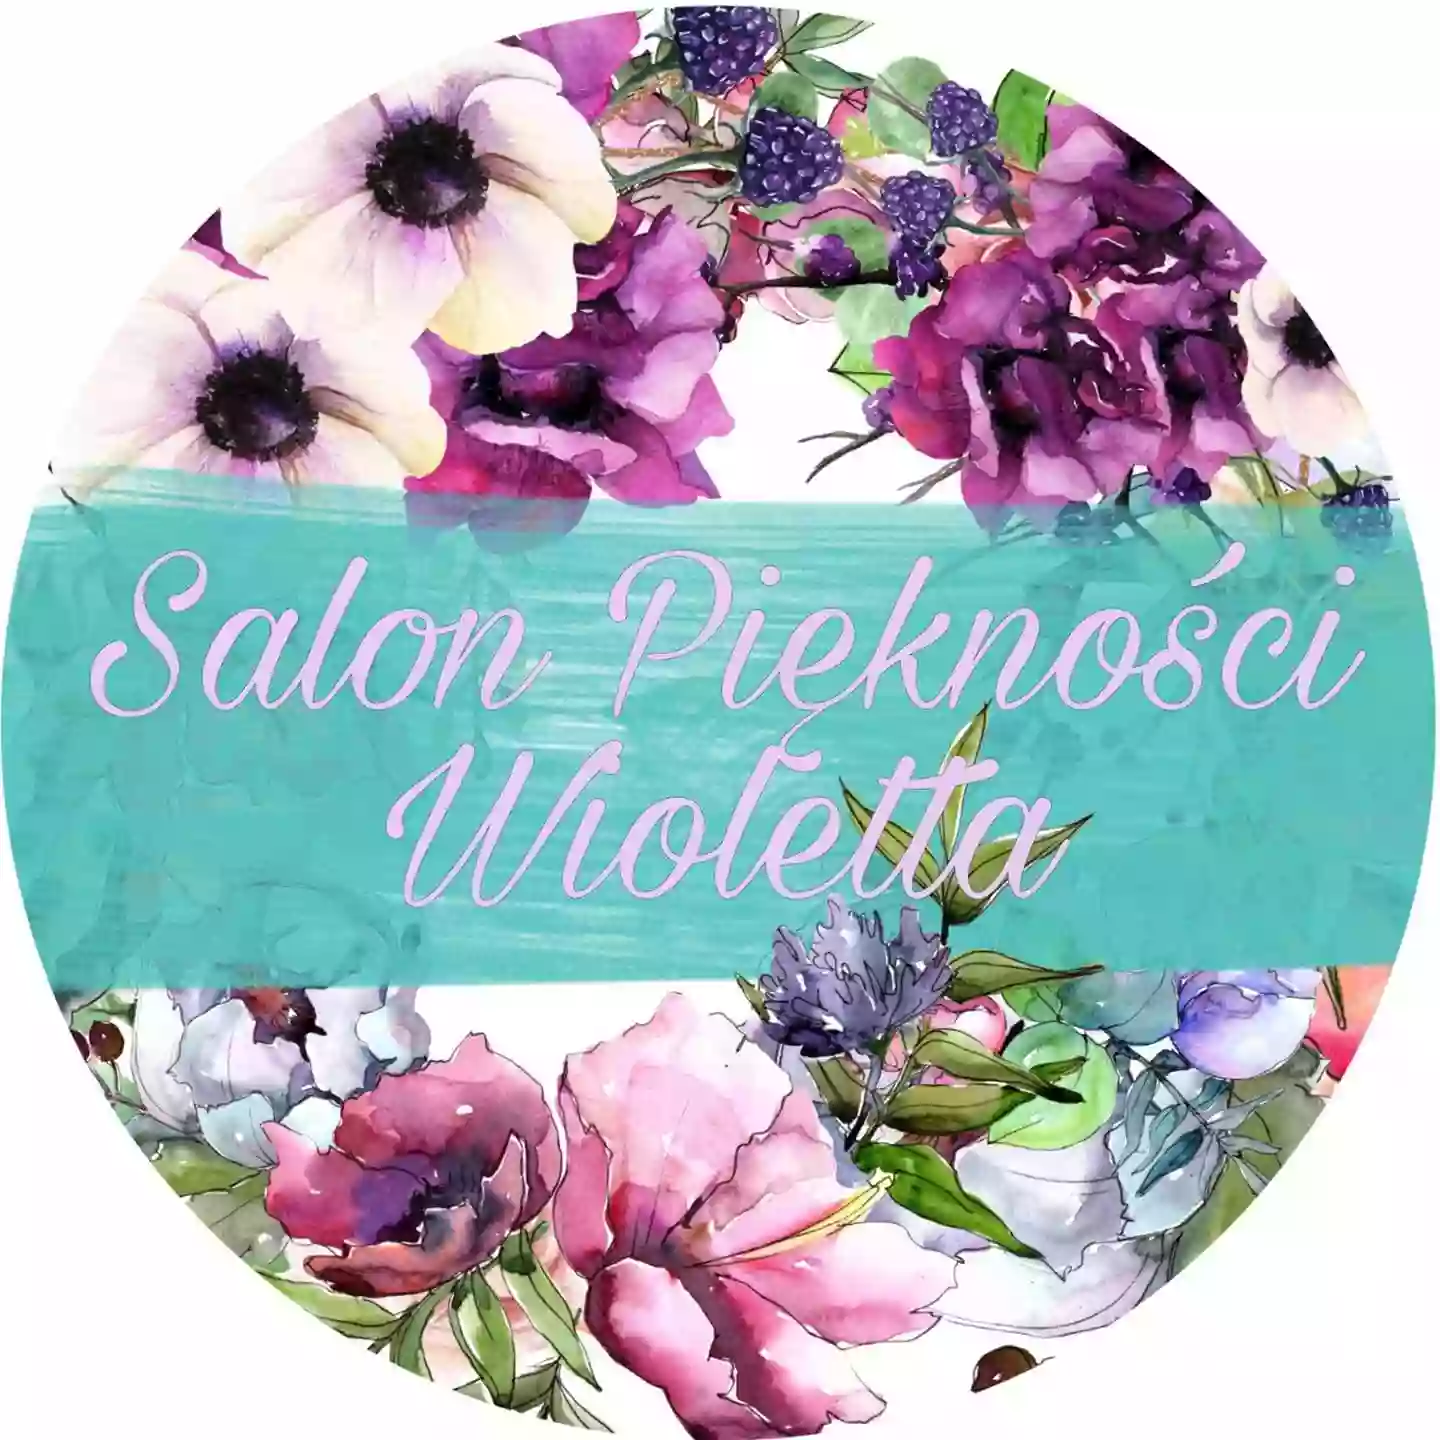 Salon Piękności WIOLETTA - Makijaż permanentny, profesjonalne zabiegi na twarz